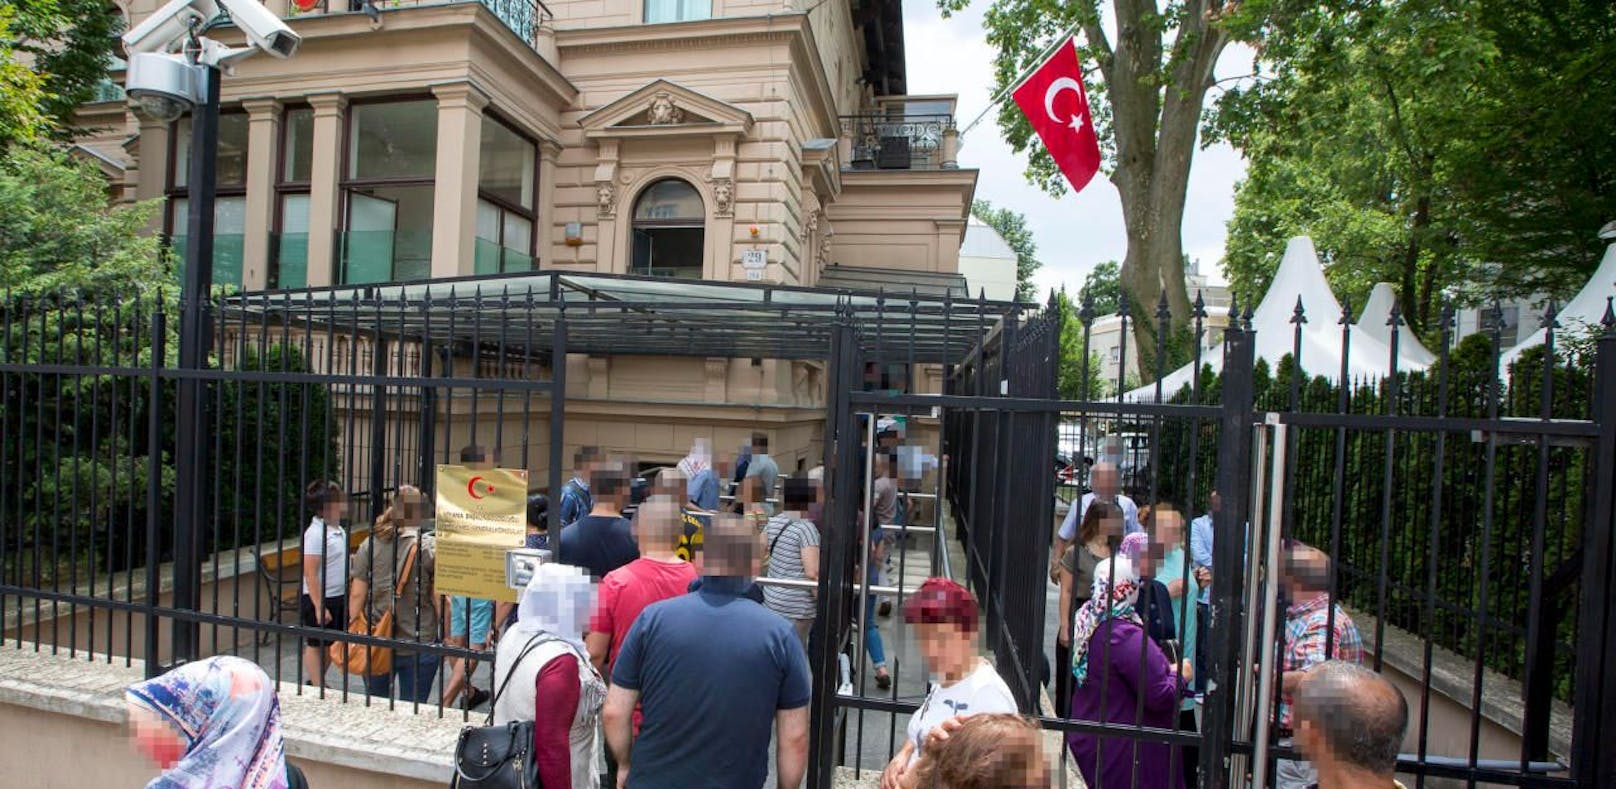 In Wien existieren laut Studie Viertel, in denen türkische Migranten problemlos ohne jegliche Deutschkenntnisse auskommen würden. (Im Bild: Ein türkisches Wahllokal in Wien während der letzten Türkei-Wahl)